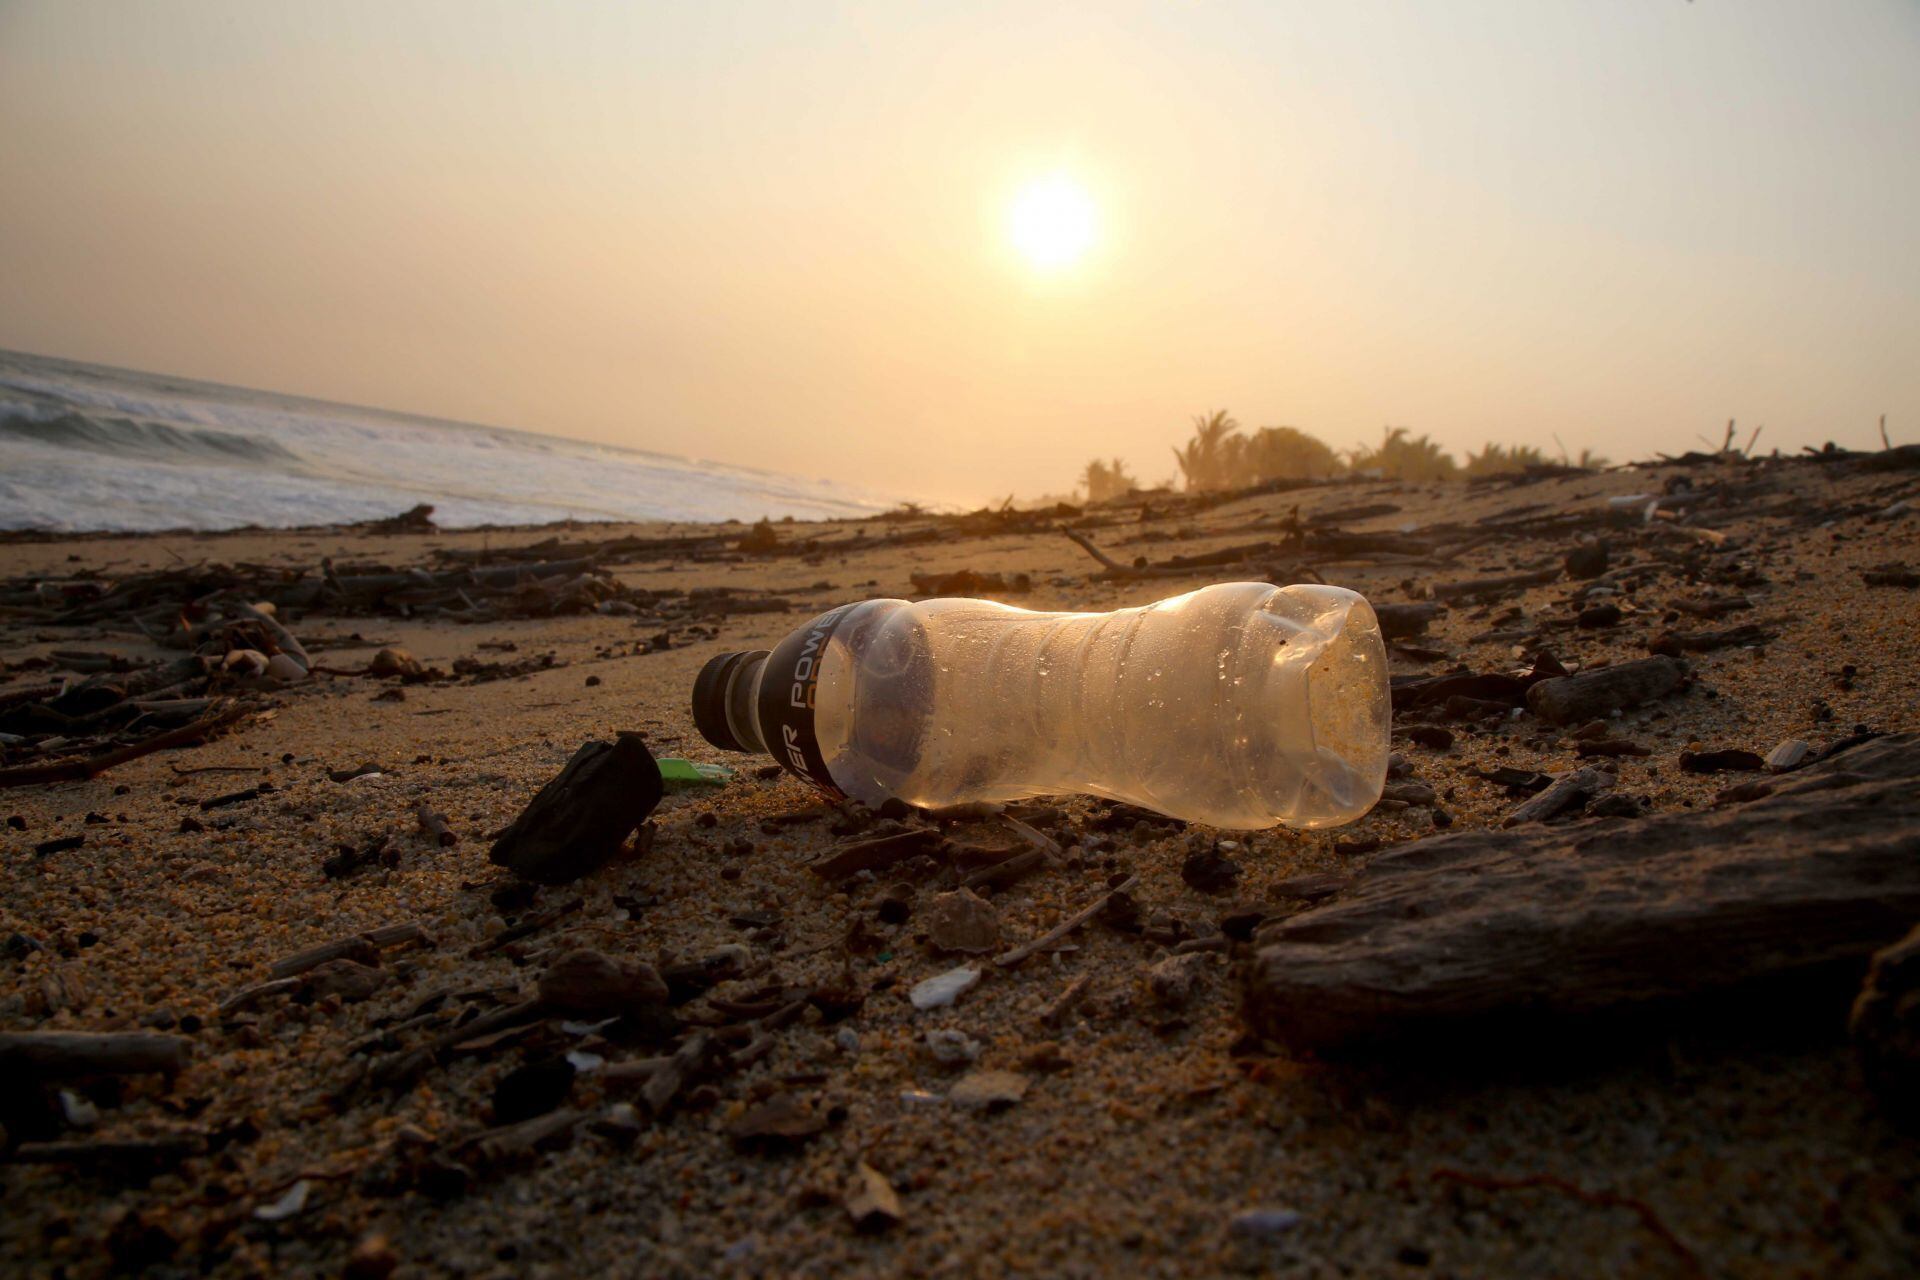 Miles de toneladas de plásticos y otros desechos llegan a las playas, esto afectada gravemente a los ecosistemas.